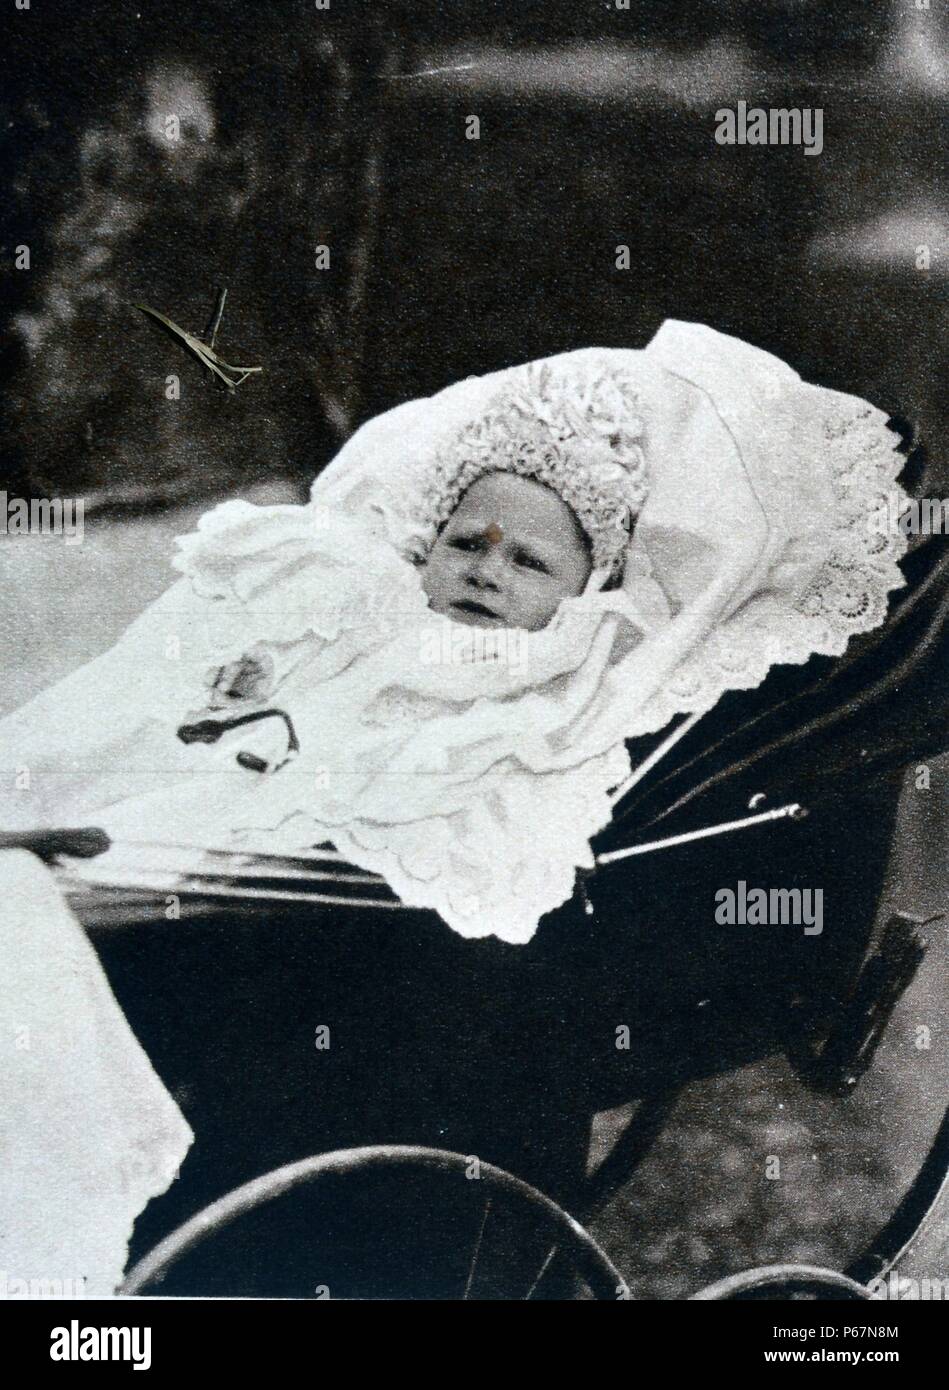 Image montre le nouveau-né Prince Albert, le duc de York (futur roi George VI) dans un landau. Banque D'Images